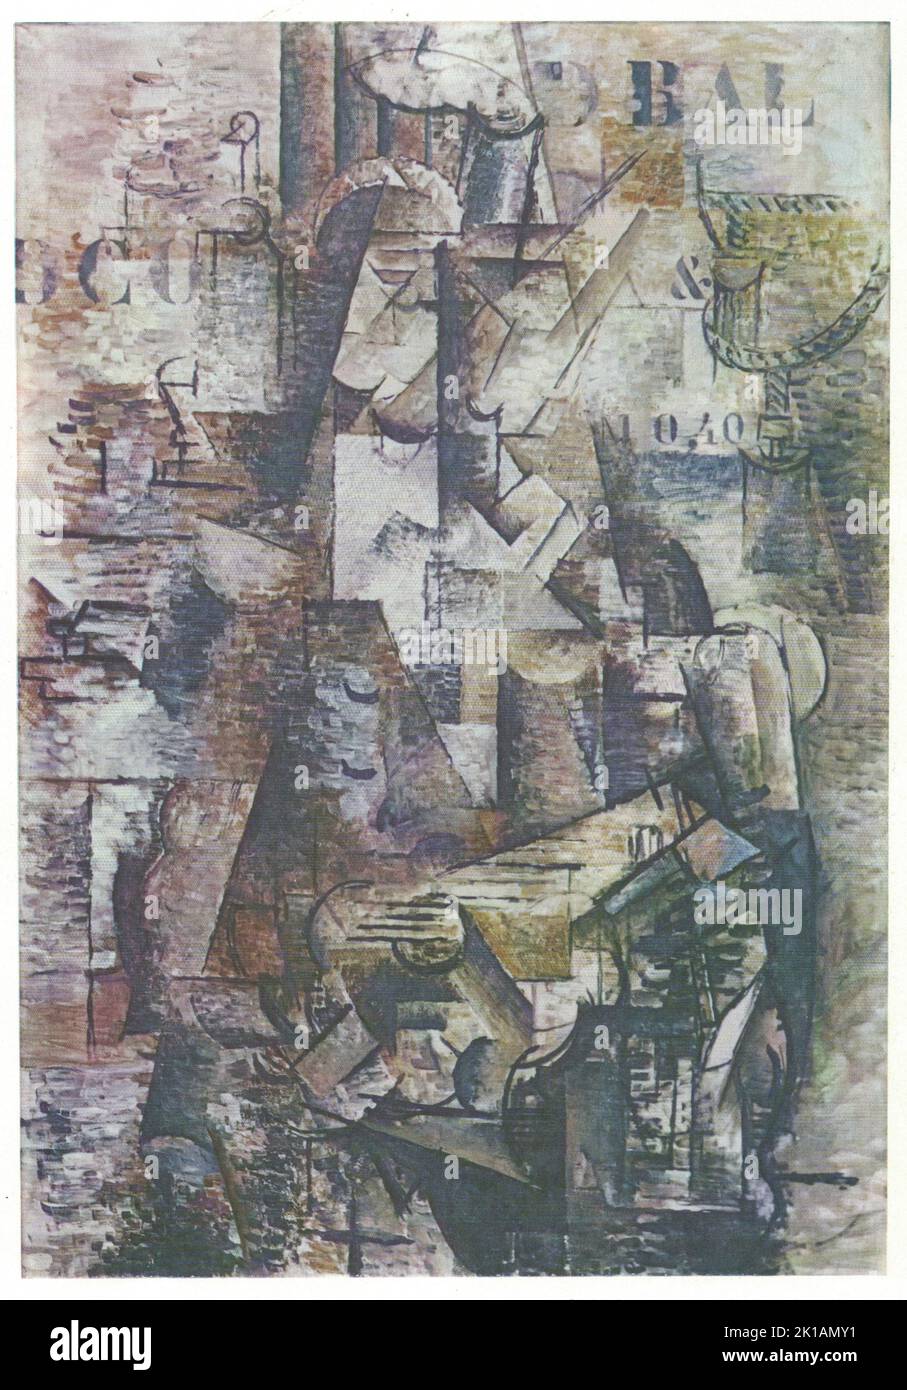 Georges Braque, portugais, 1911, huile sur toile. Georges Braque, du 13 mai 1882 au 31 août 1963, est un peintre français, un collectionniste, un dessinateur, un graveur et un sculpteur de 20th siècles. Ses contributions les plus remarquables ont été dans son alliance avec Fauvism à partir de 1905, et le rôle qu'il a joué dans le développement du Cubisme. Le travail de Braques entre 1908 et 1912 est étroitement associé à celui de son collègue Pablo Picasso. Leurs œuvres cubistes respectives ont été indiscernables pendant de nombreuses années, mais la nature tranquille de Braque a été partiellement éclipsée par la renommée et la notoriété de Picasso. Banque D'Images